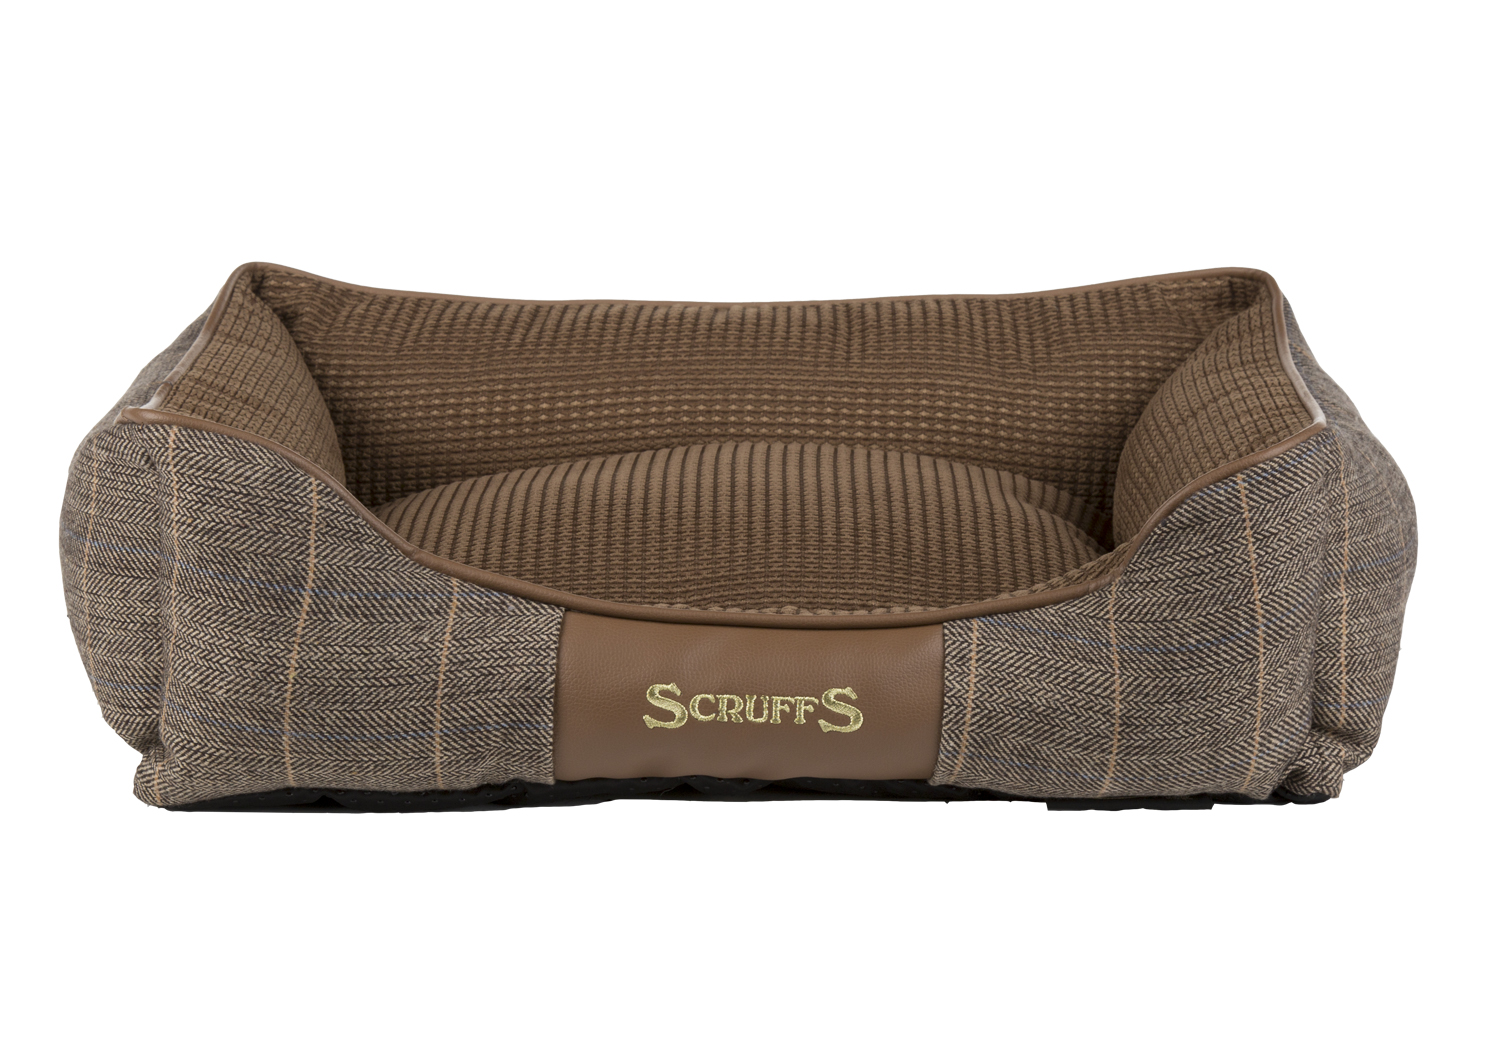 Лежак для собак Scruffs Windsor, с бортиками, коричневый, 60 х 50 х 18см